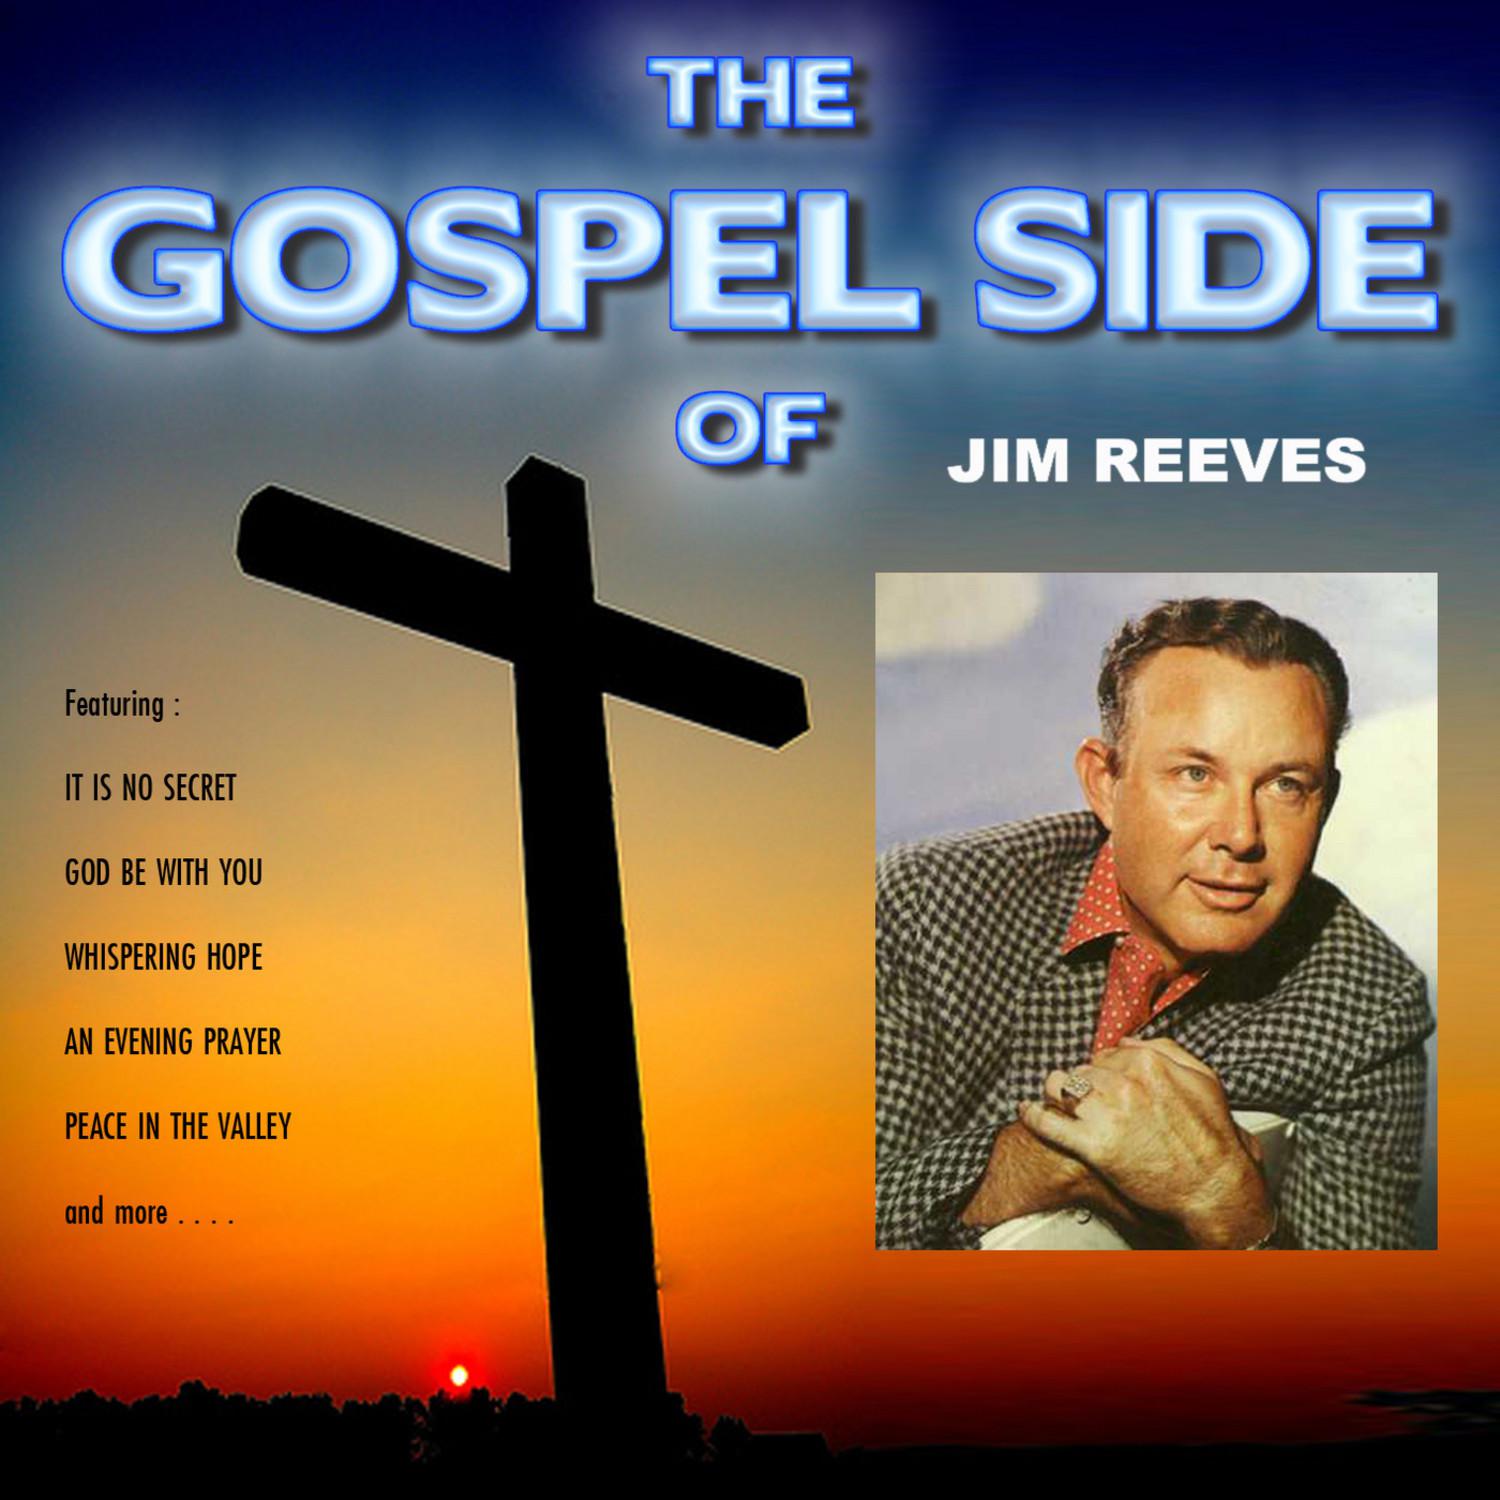 The Gospel Side of Jim Reeves